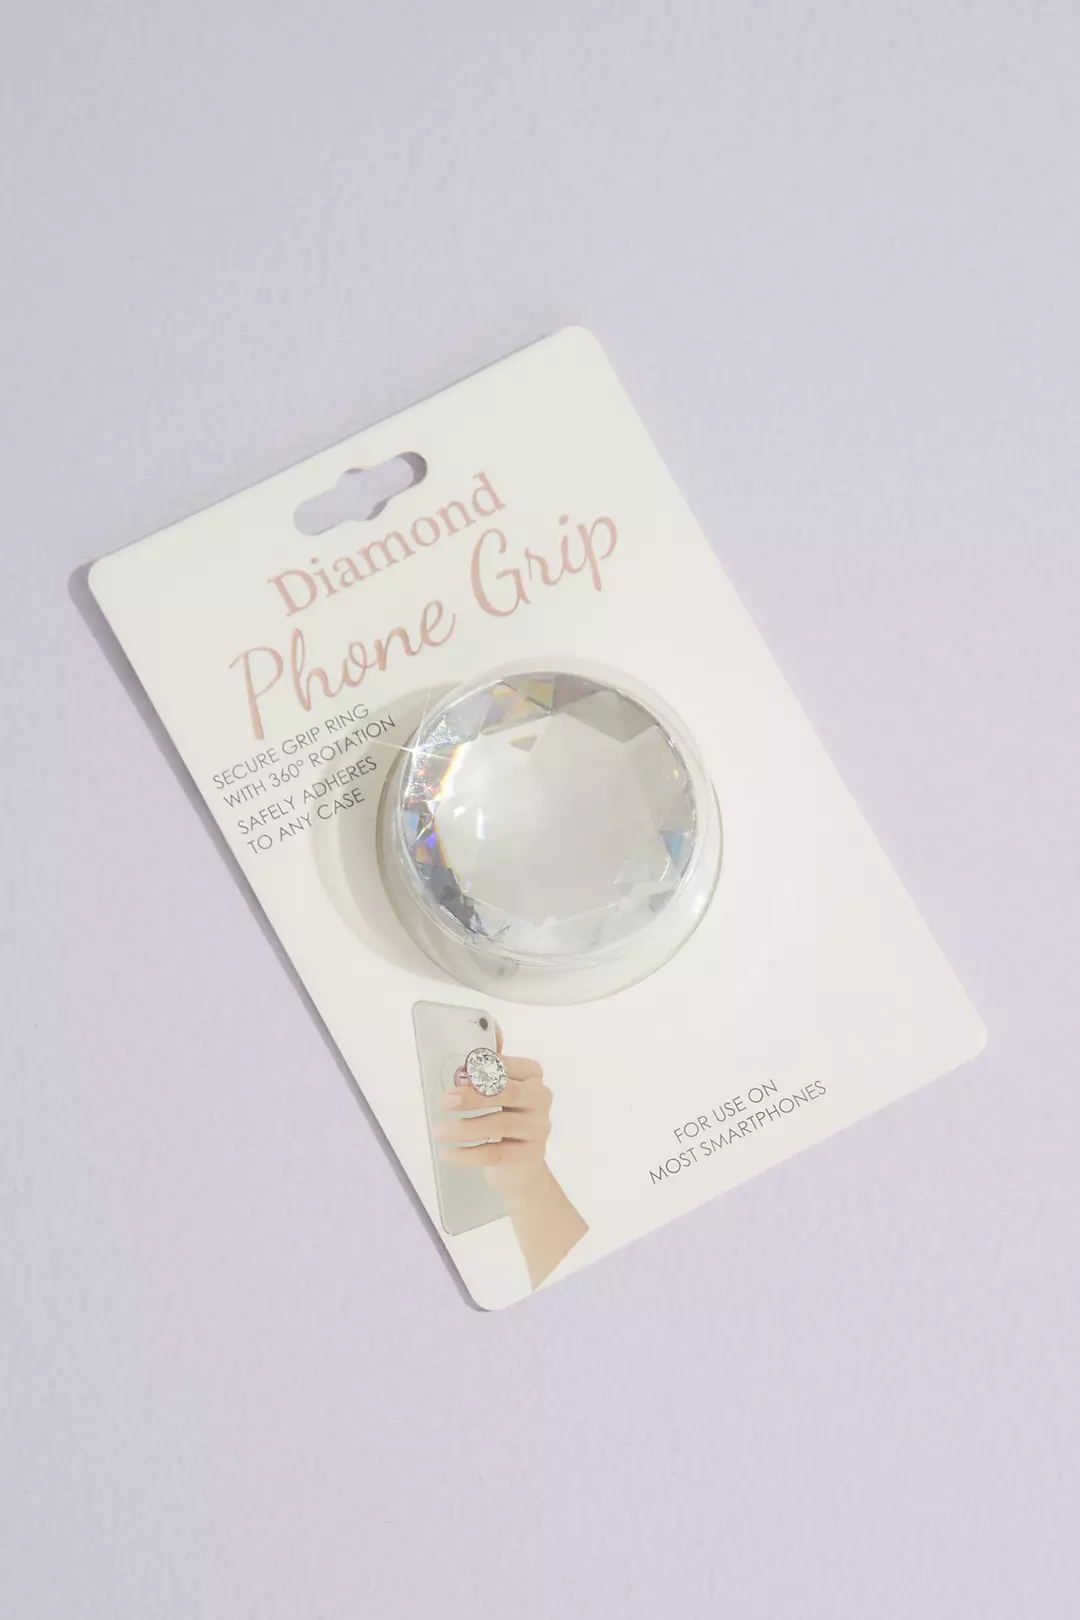 Diamond Phone Grip Image